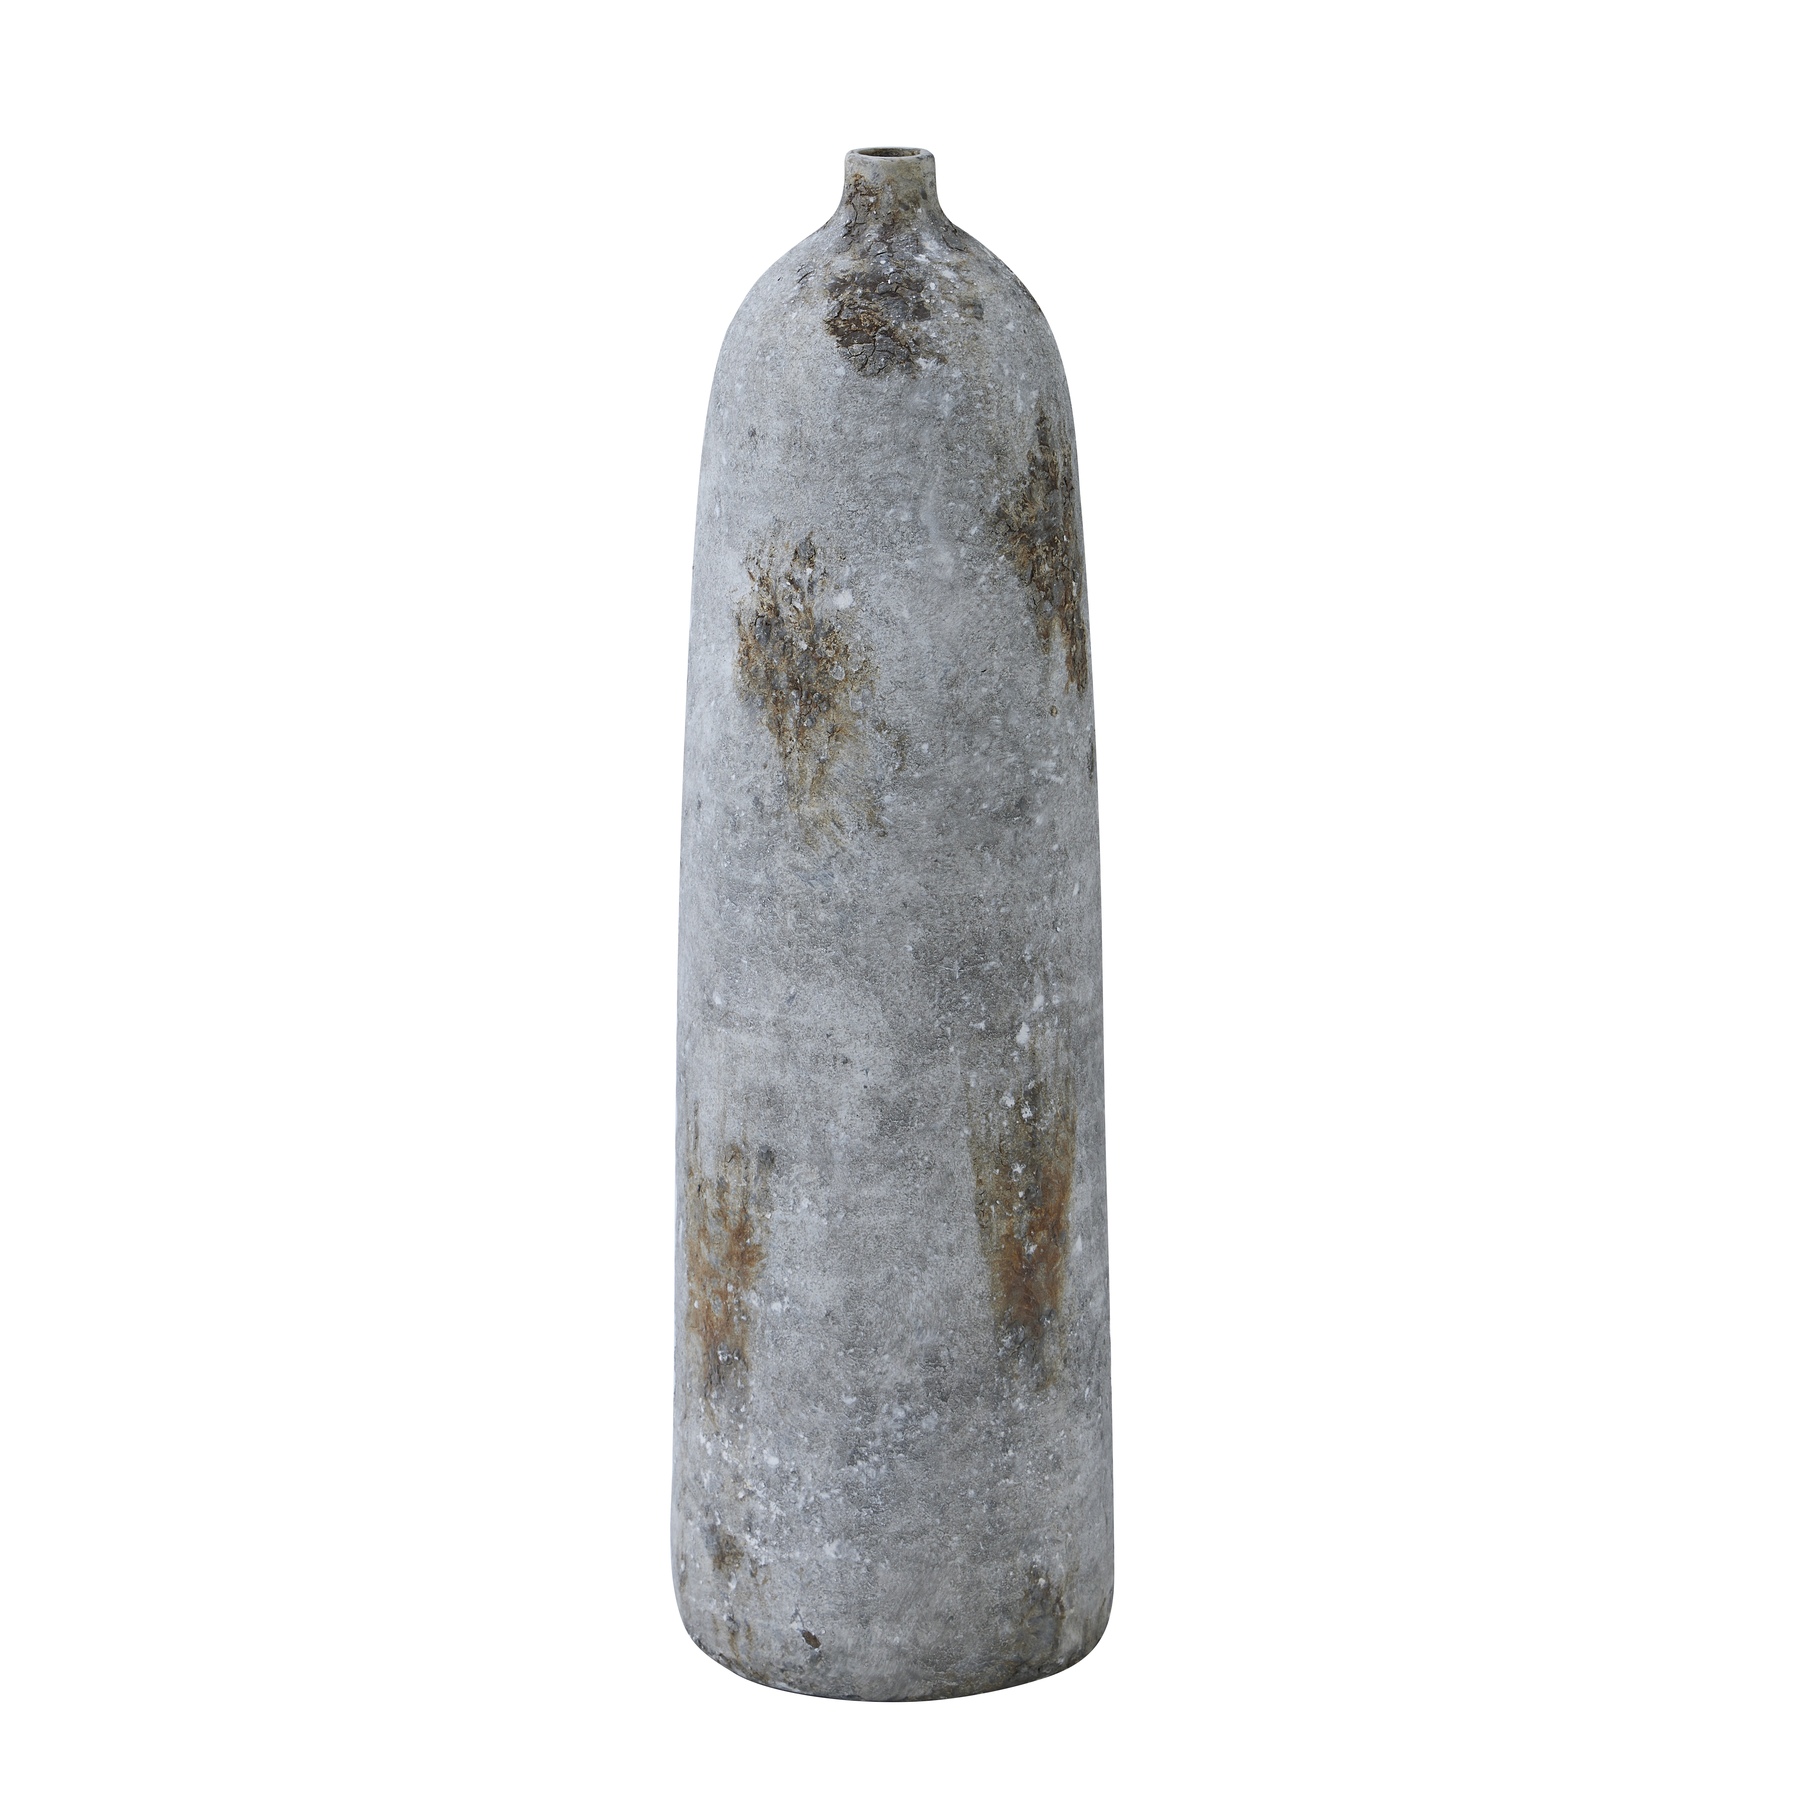 Large Aged Stone Bottle Vase - Image 1